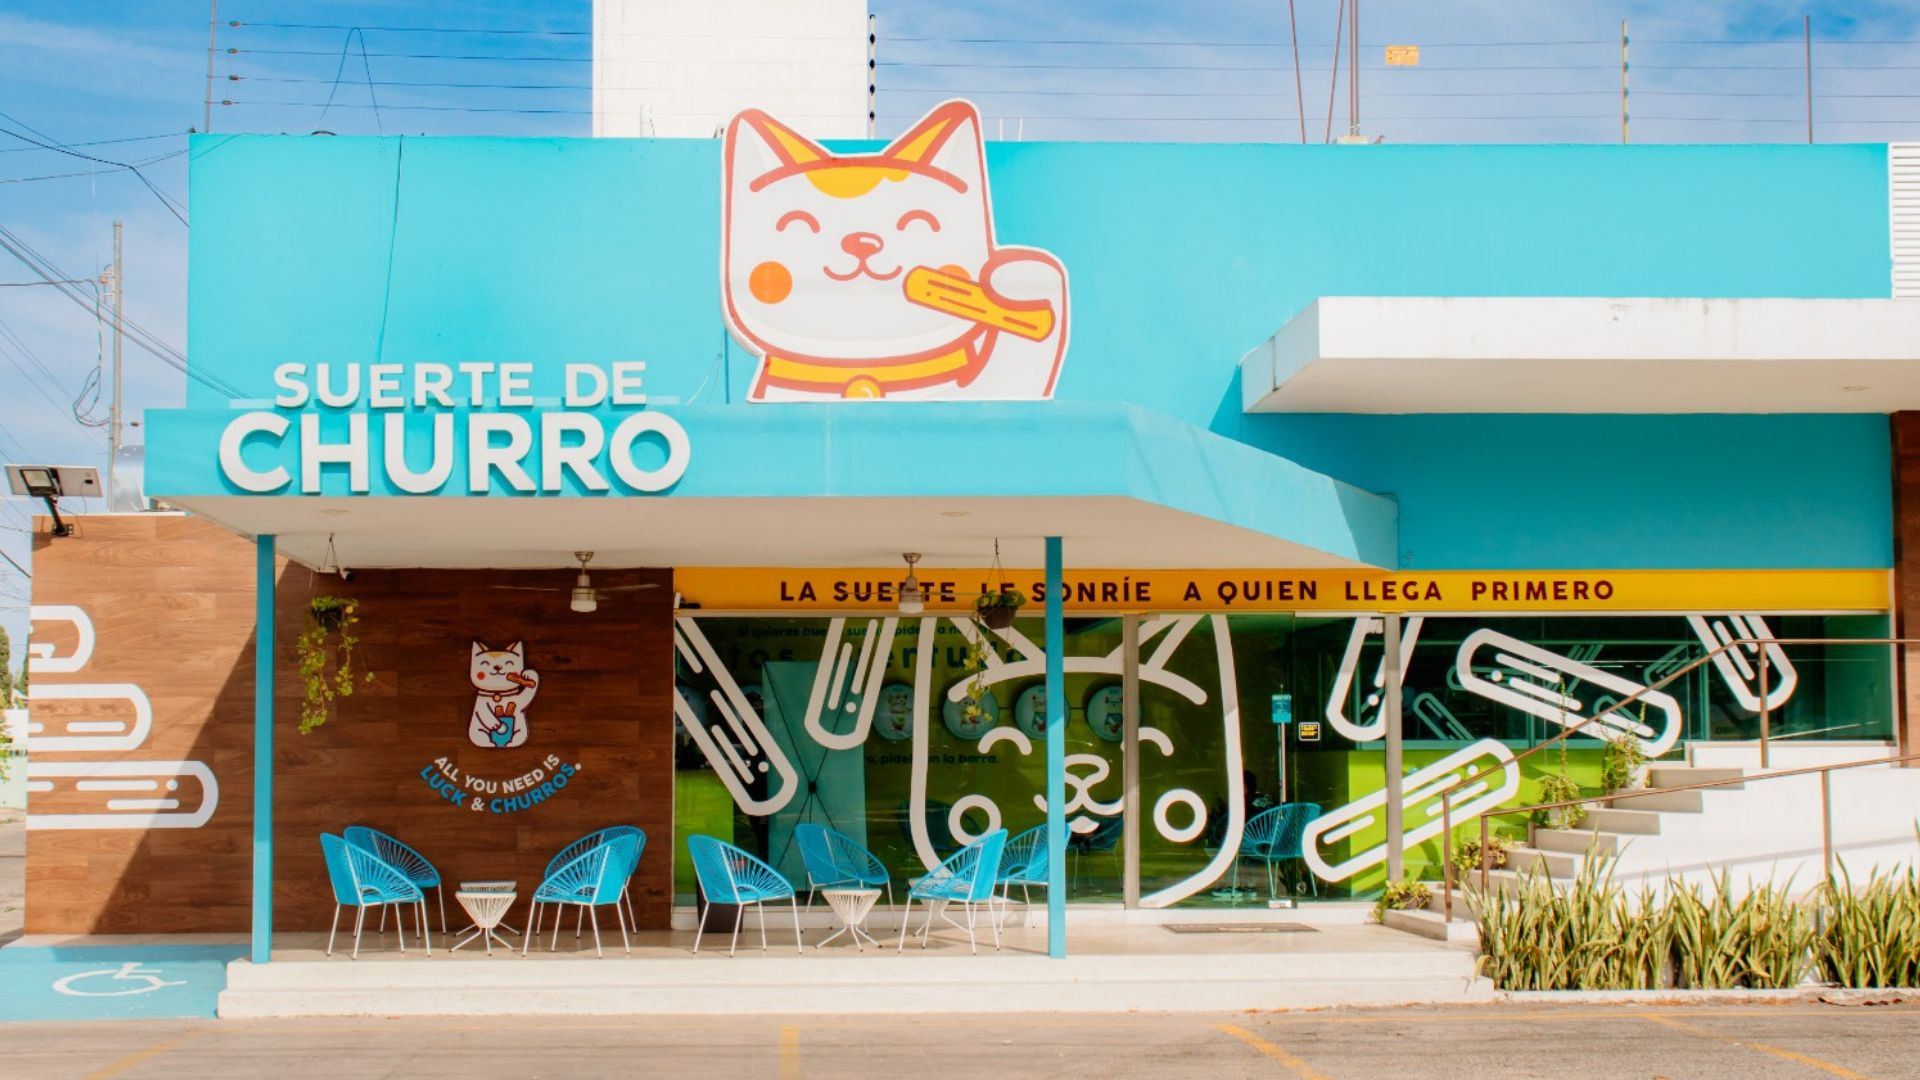 Suerte de Churro: El spot perfecto para los 'Churro Lovers' en la ciudad de Mérida